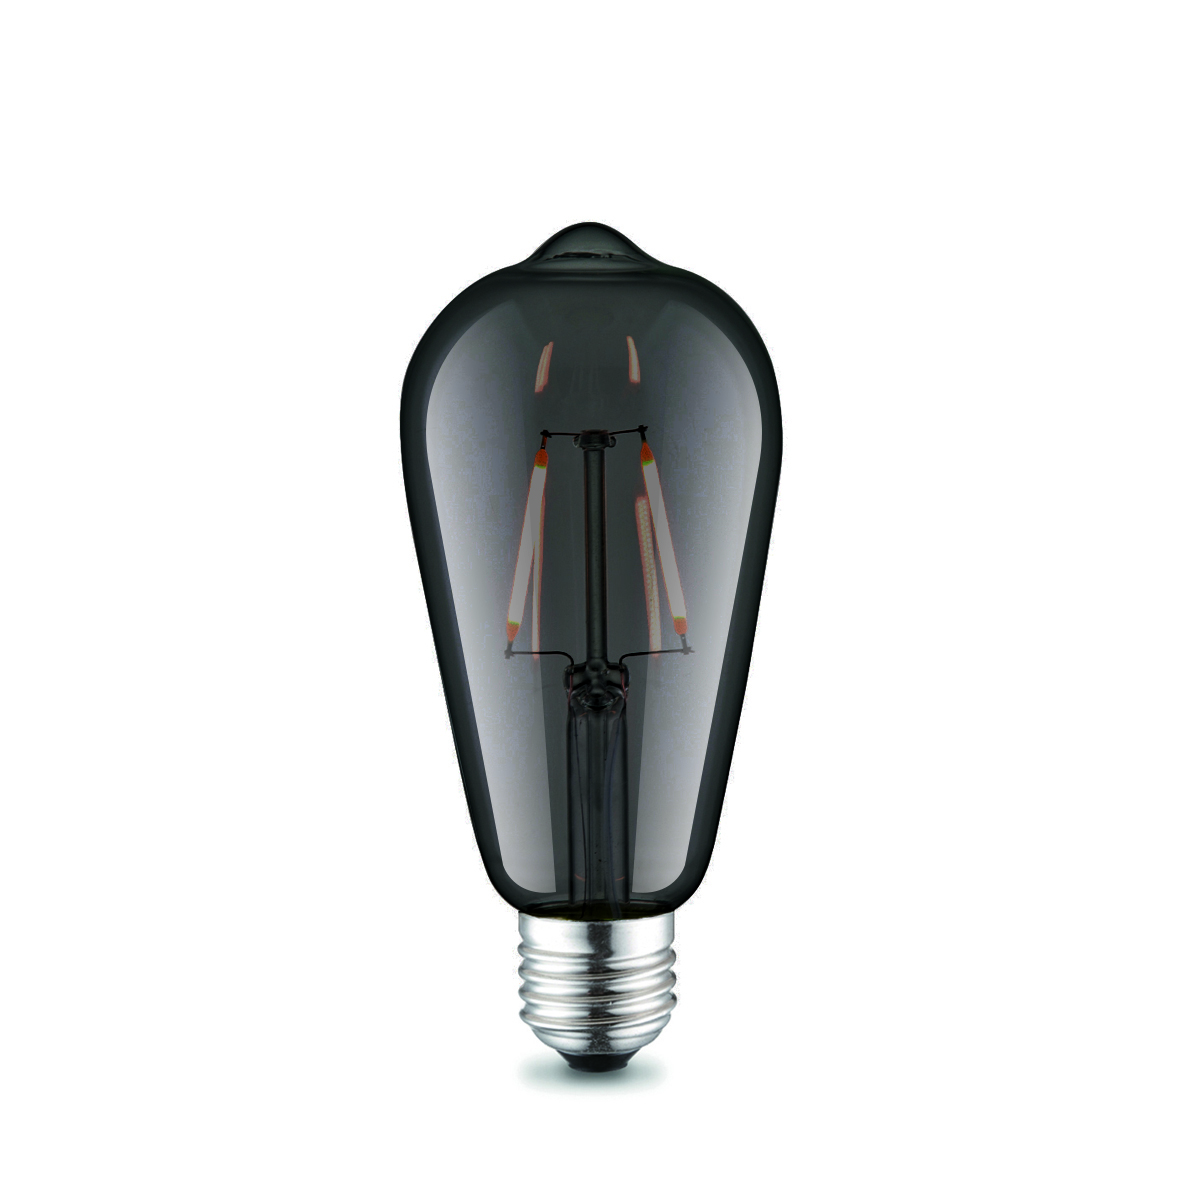 Tangla lighting - TLB-8001-02TM - LED Light Bulb Deco filament - ST64 2W titanium - non dimmable - E27